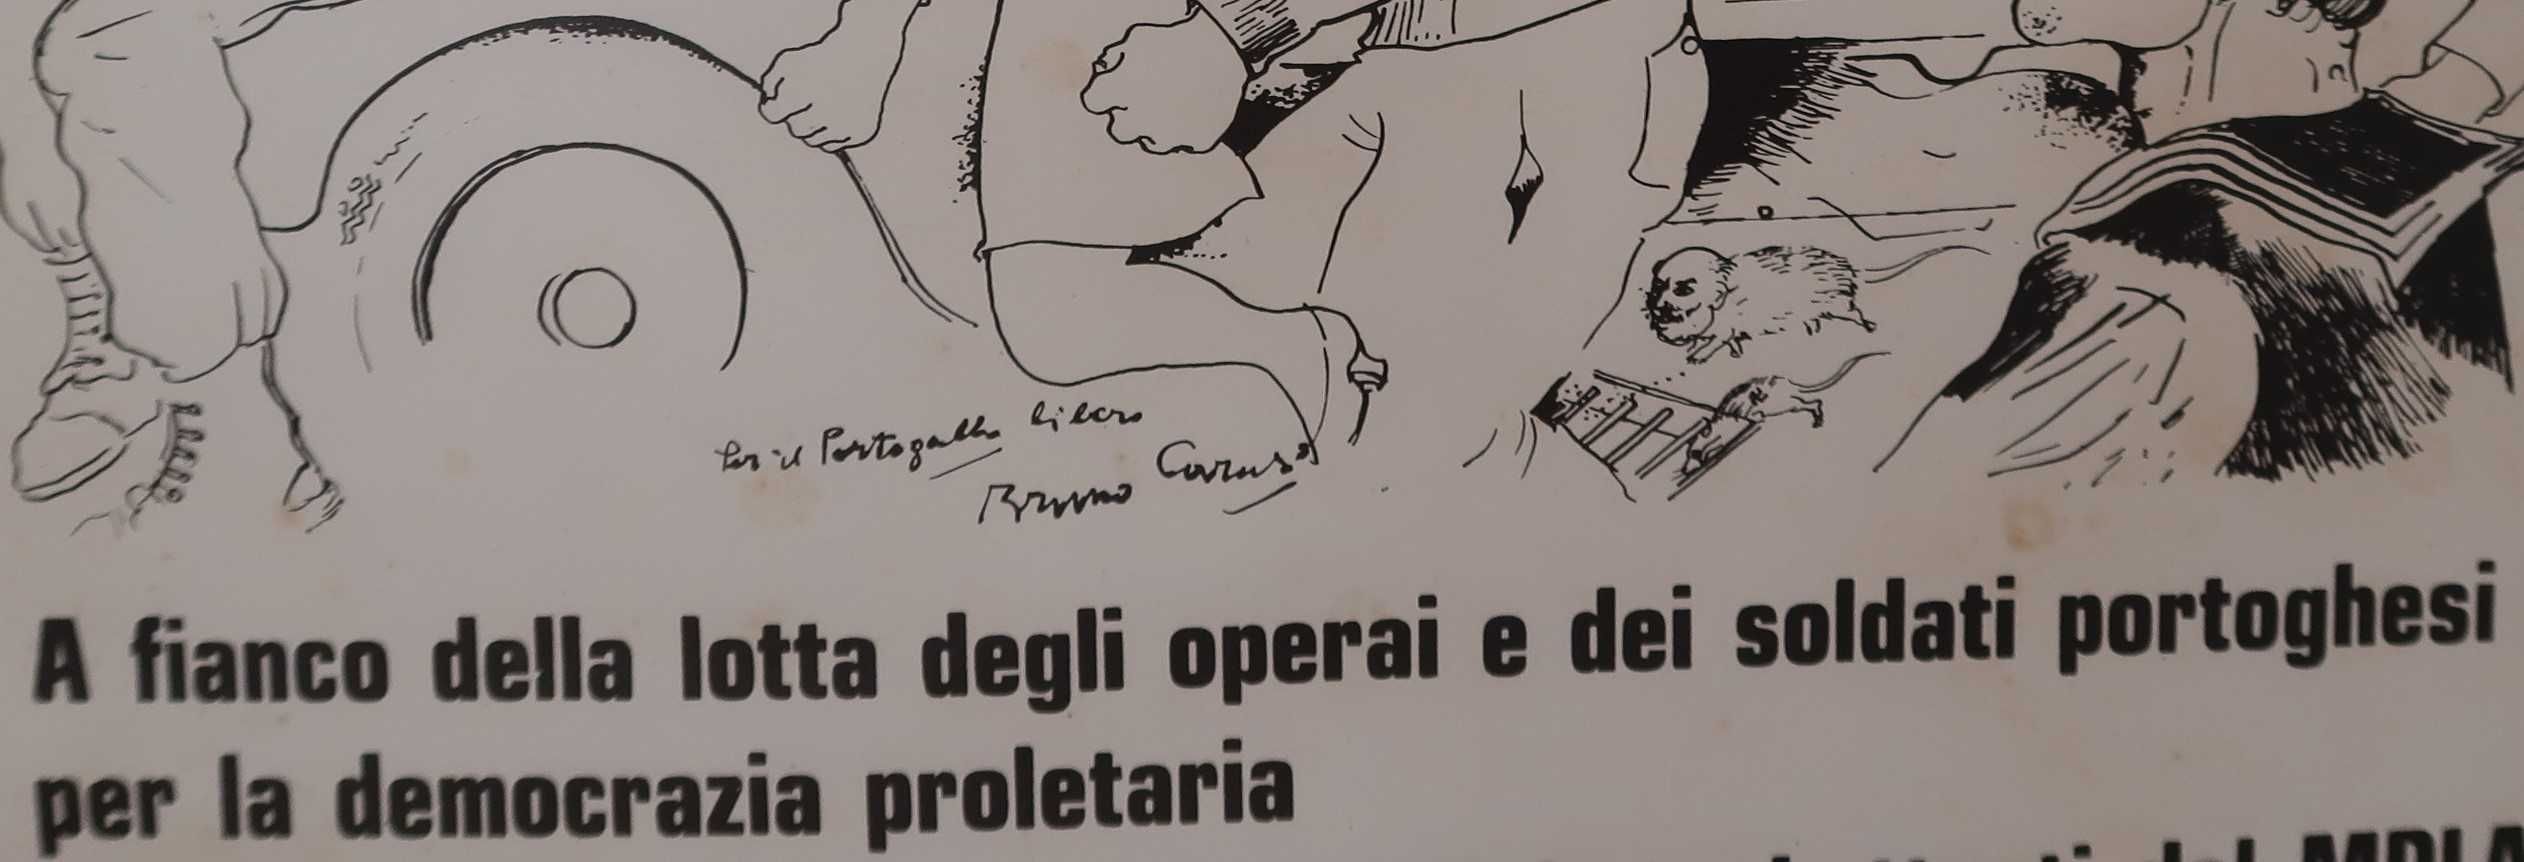 Cartaz manif solidariedade revolução Portugal 1974 Bruno Caruso Itália